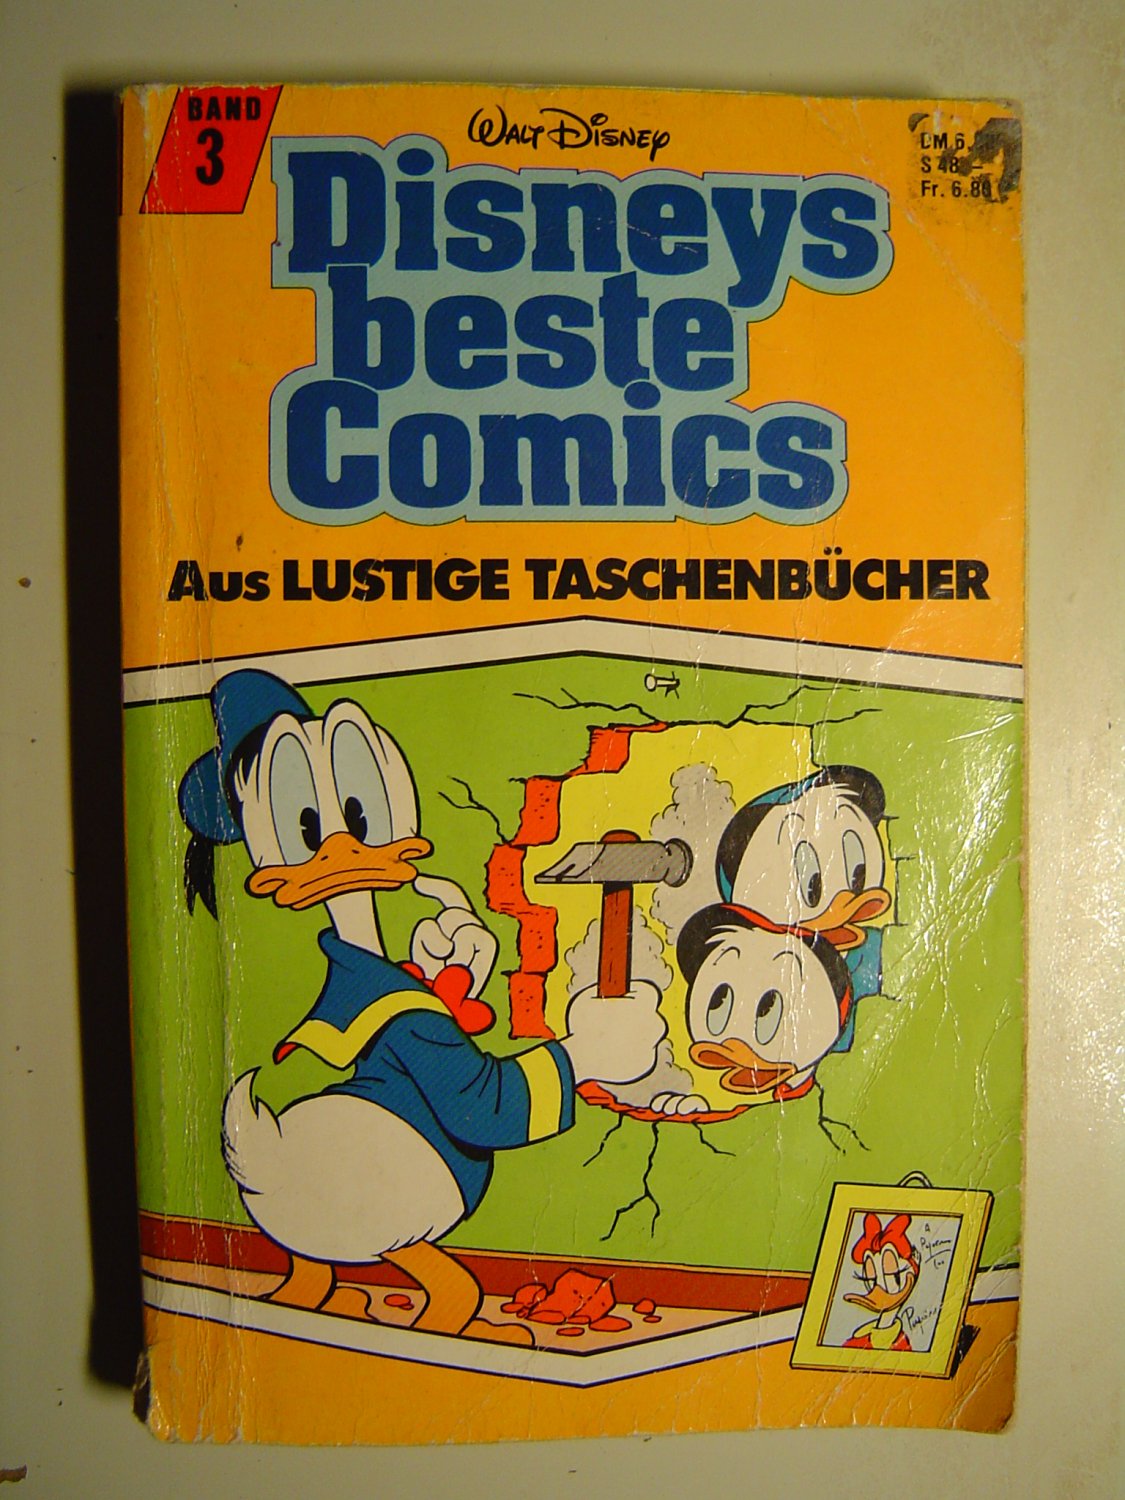 Walt Disney Band 3 Disneys Beste Comics Aus Lustige Taschenbucher Buch Gebraucht Kaufen A02nejo1zzb